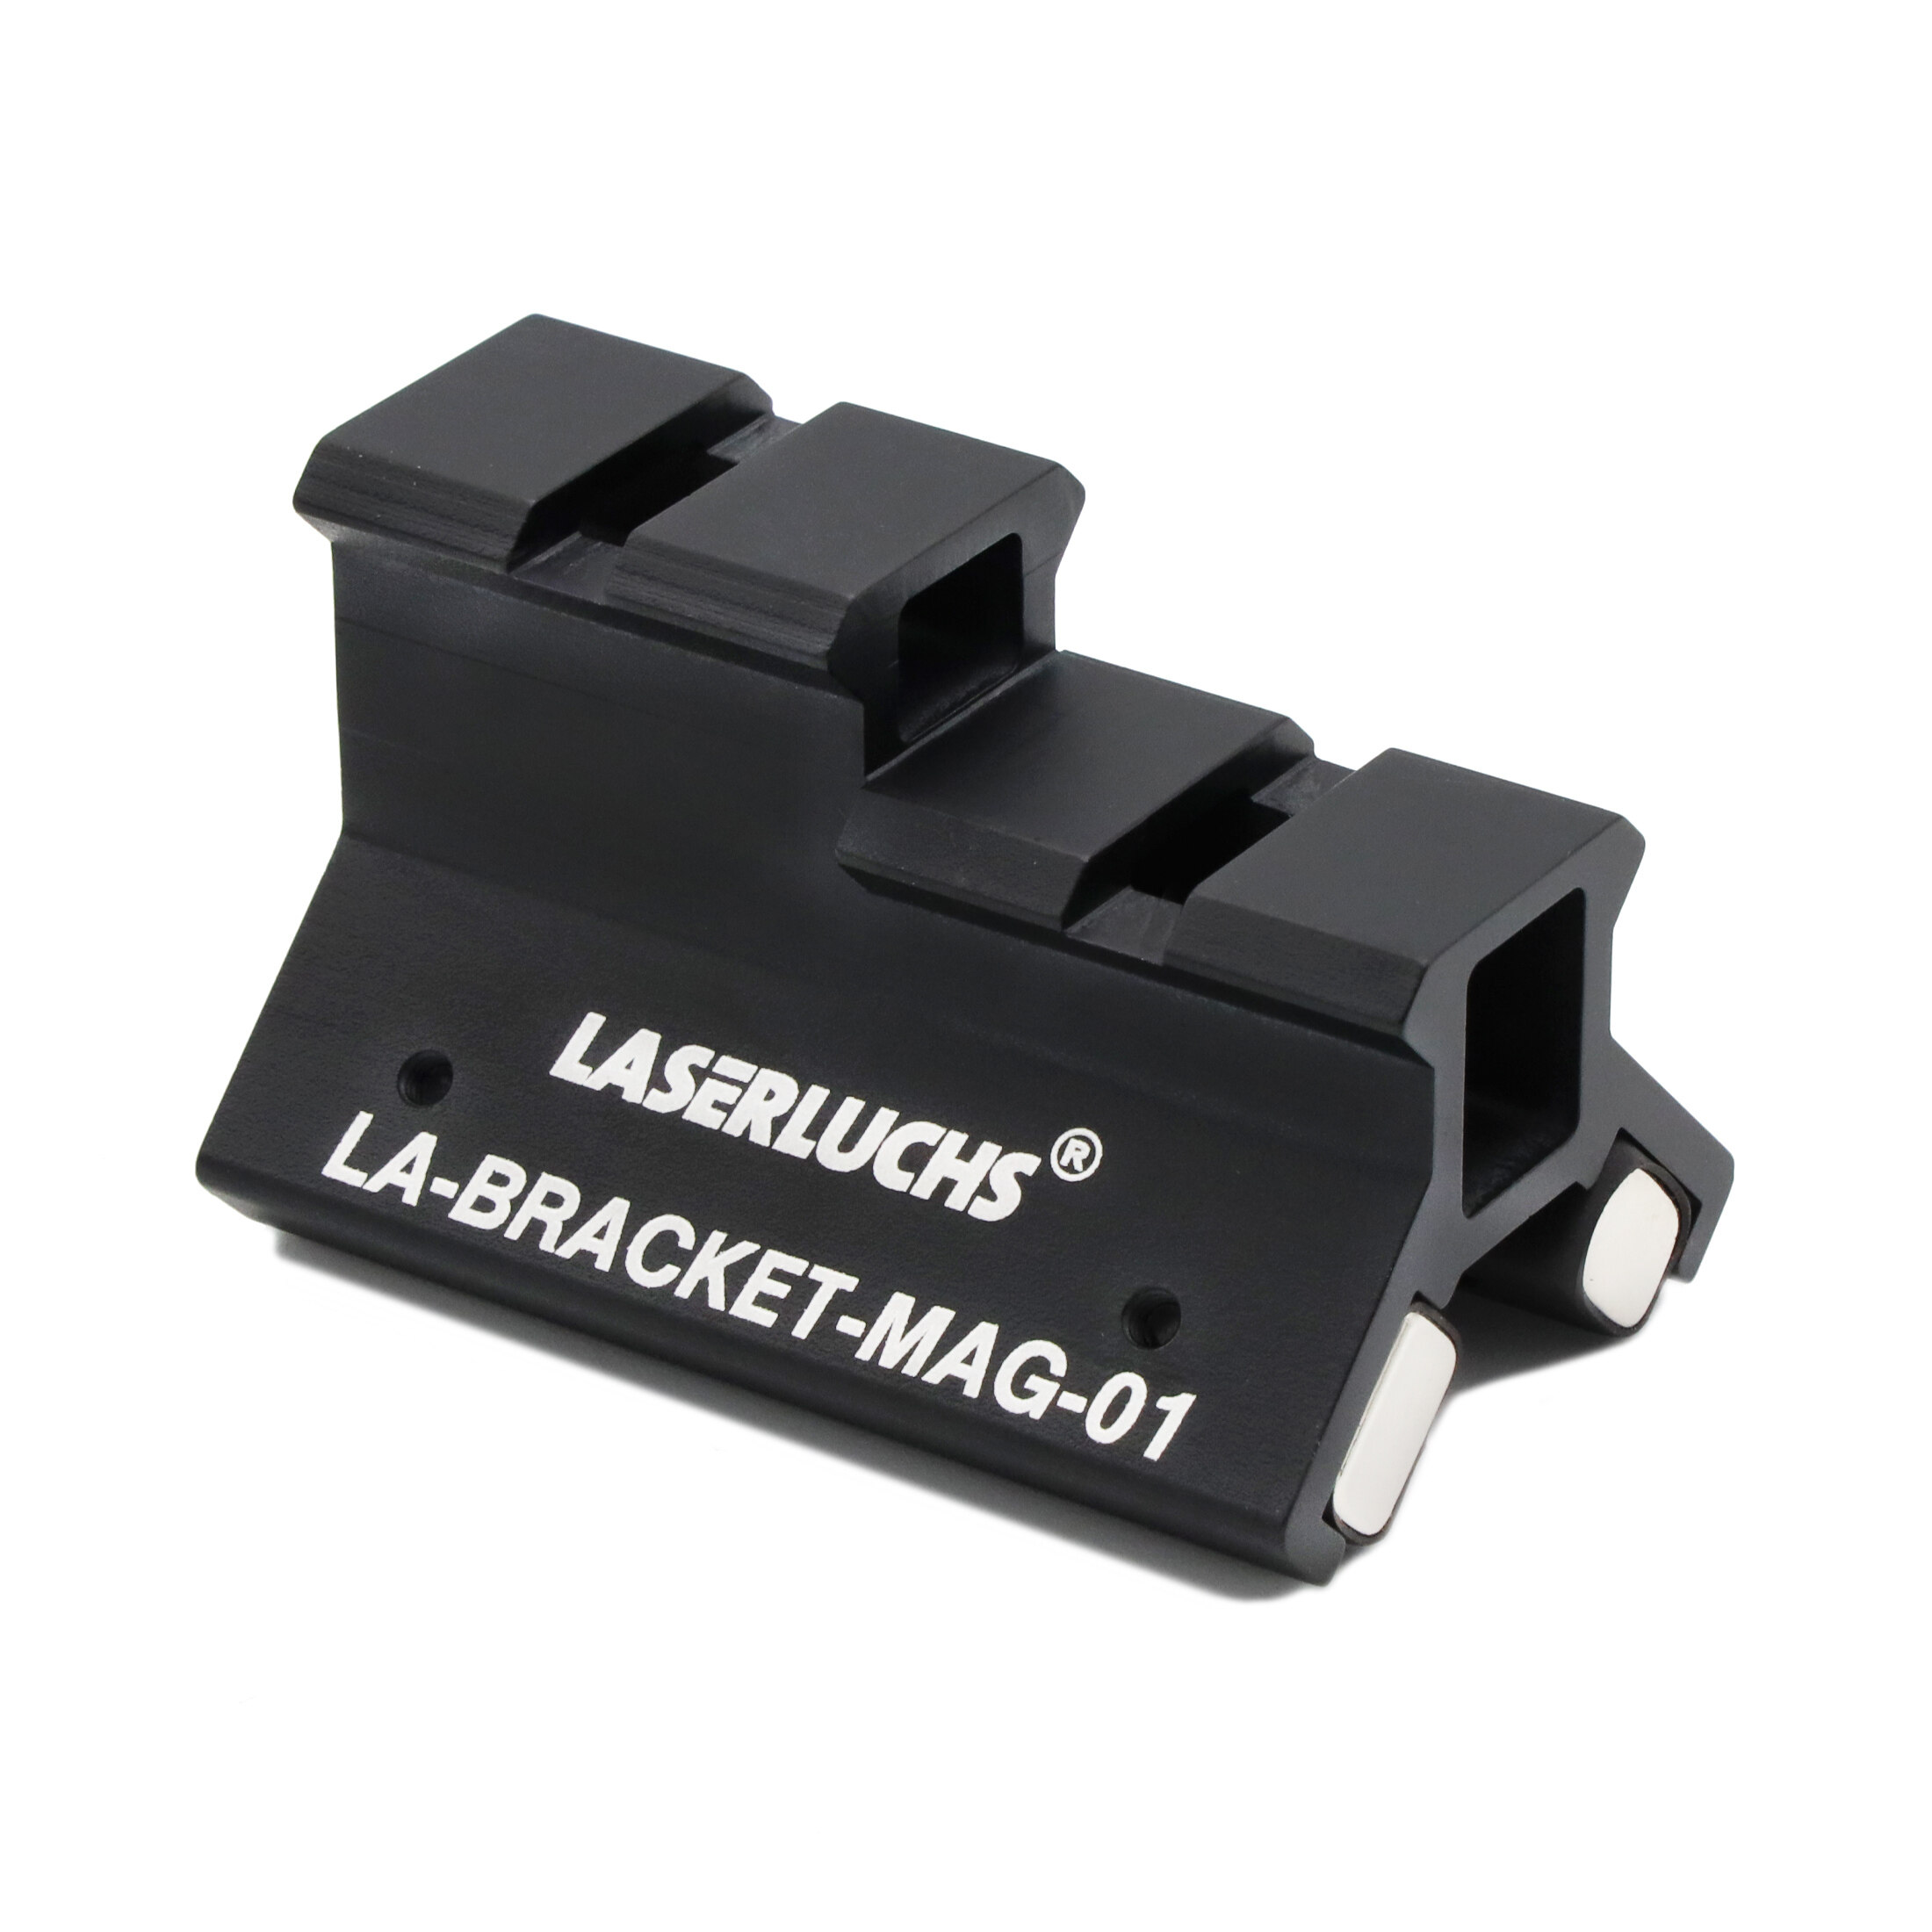 Laserluchs Halterungen LA-BRACKET-MAG-01